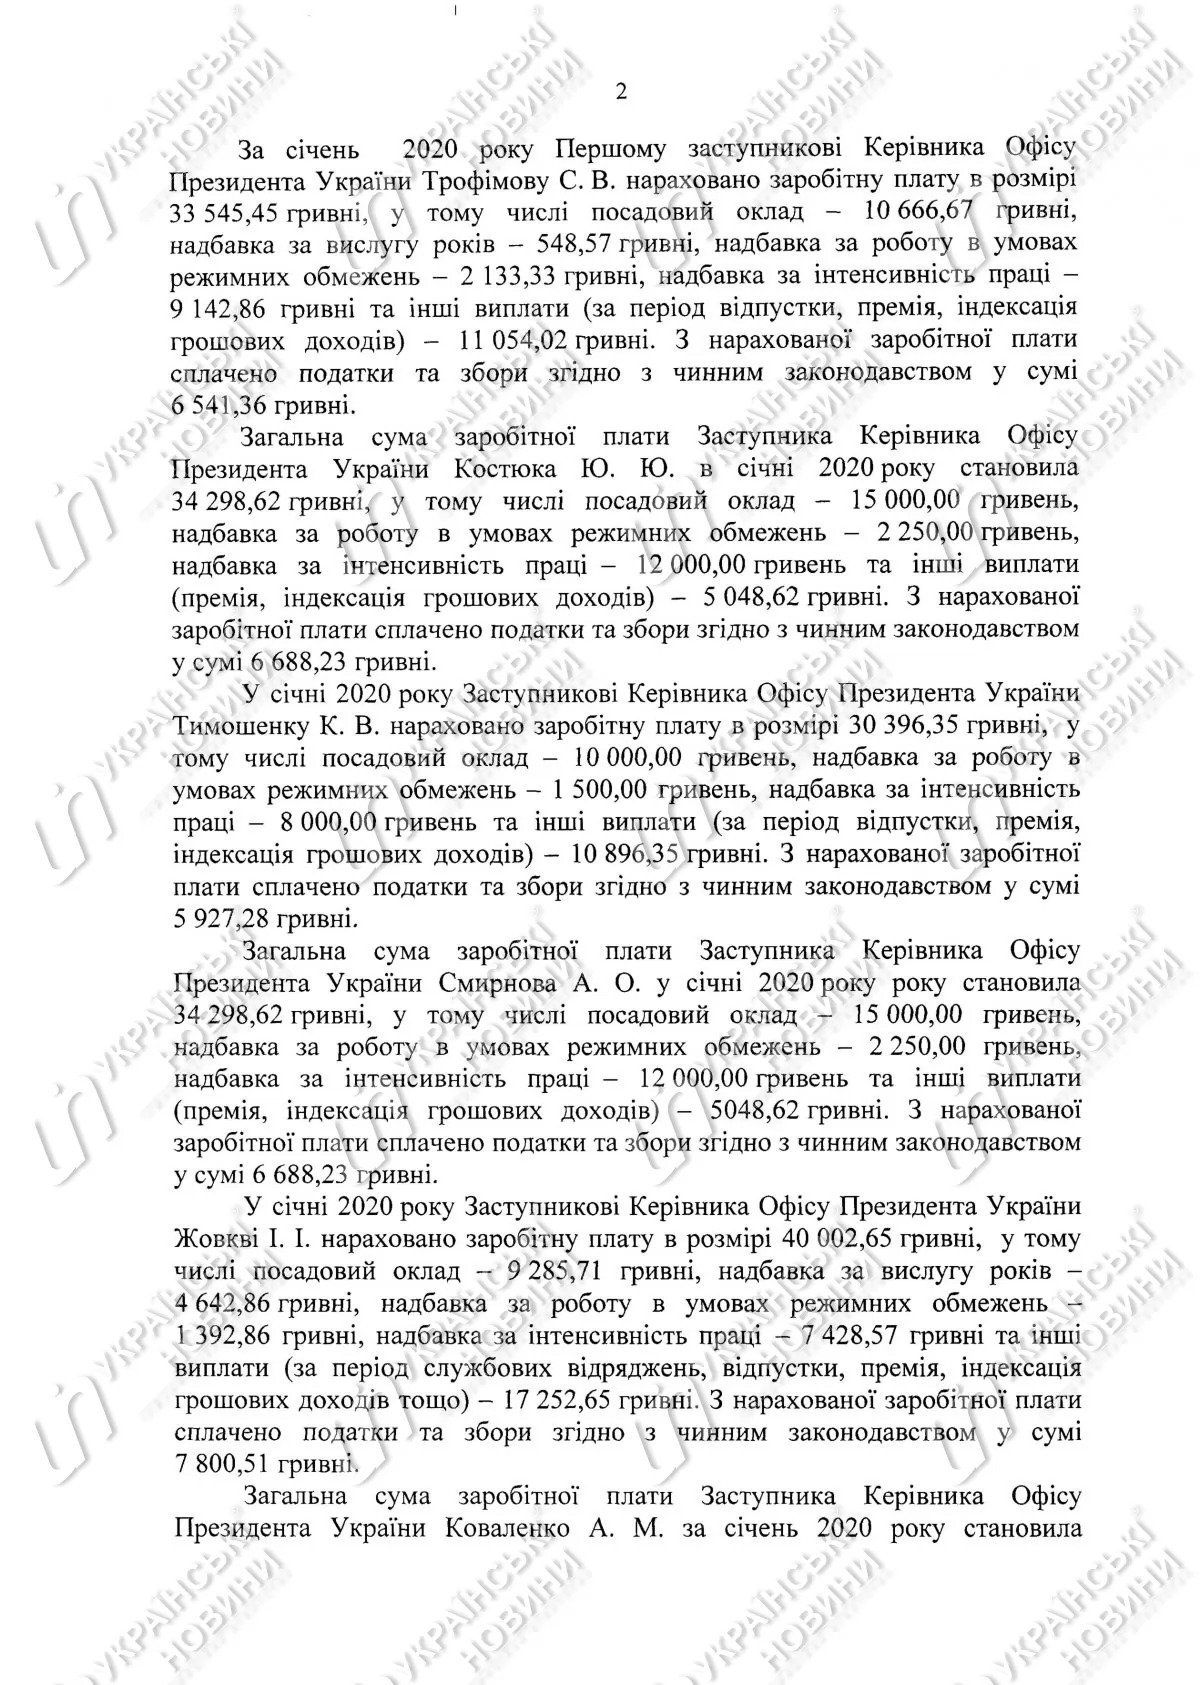 Зарплата прессекретарки президента України Юлії Мендель за підсумками січня 2020 року склала 52,5 тис. гривень